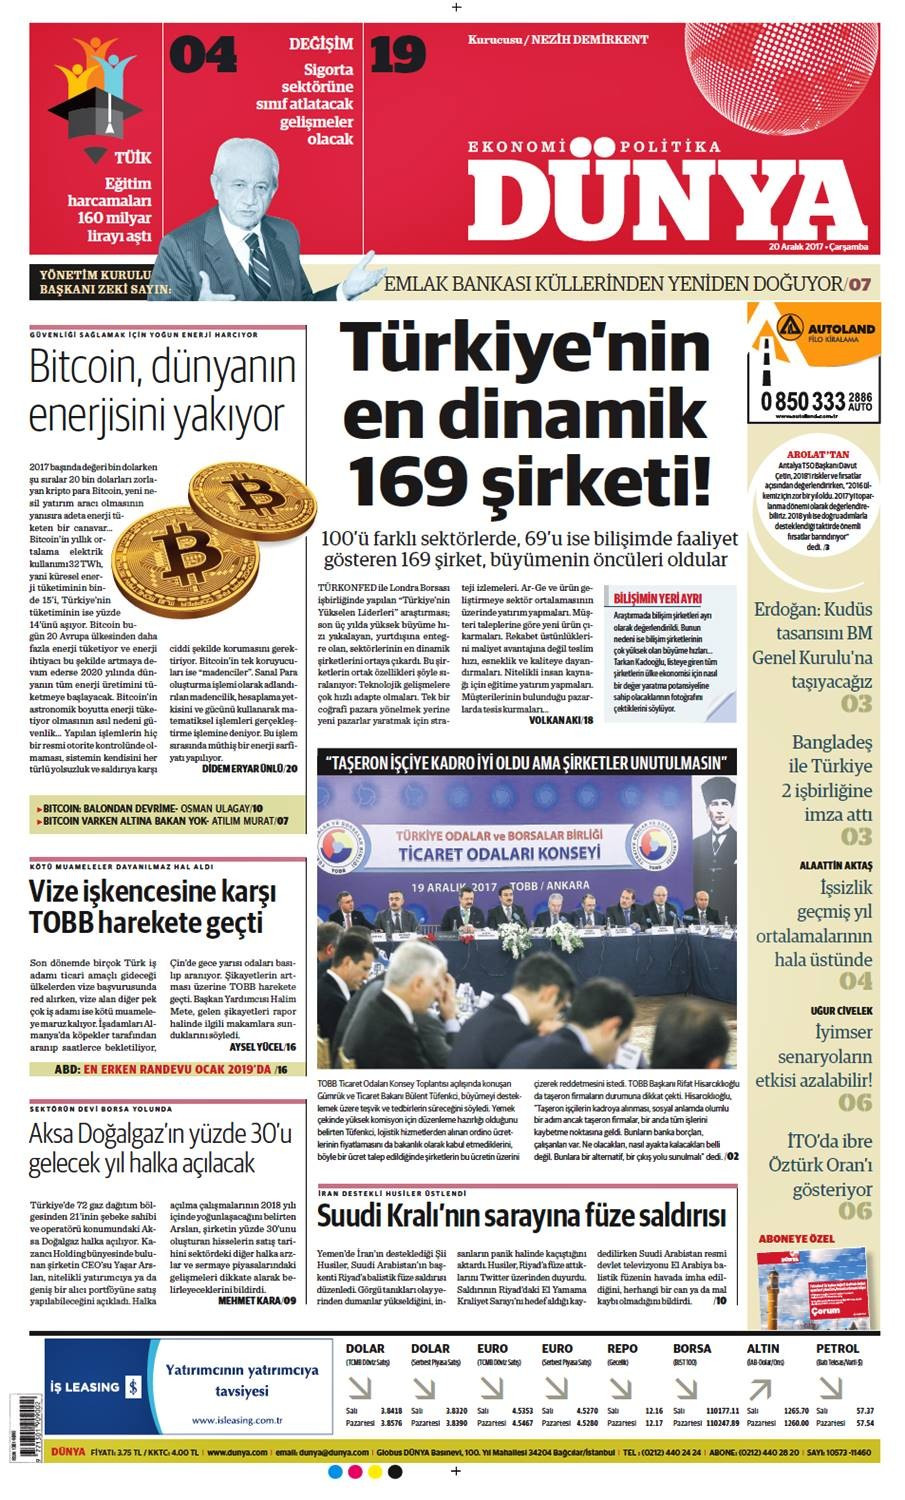 Günün gazete manşetleri (20 Aralık 2017) - Sayfa 1